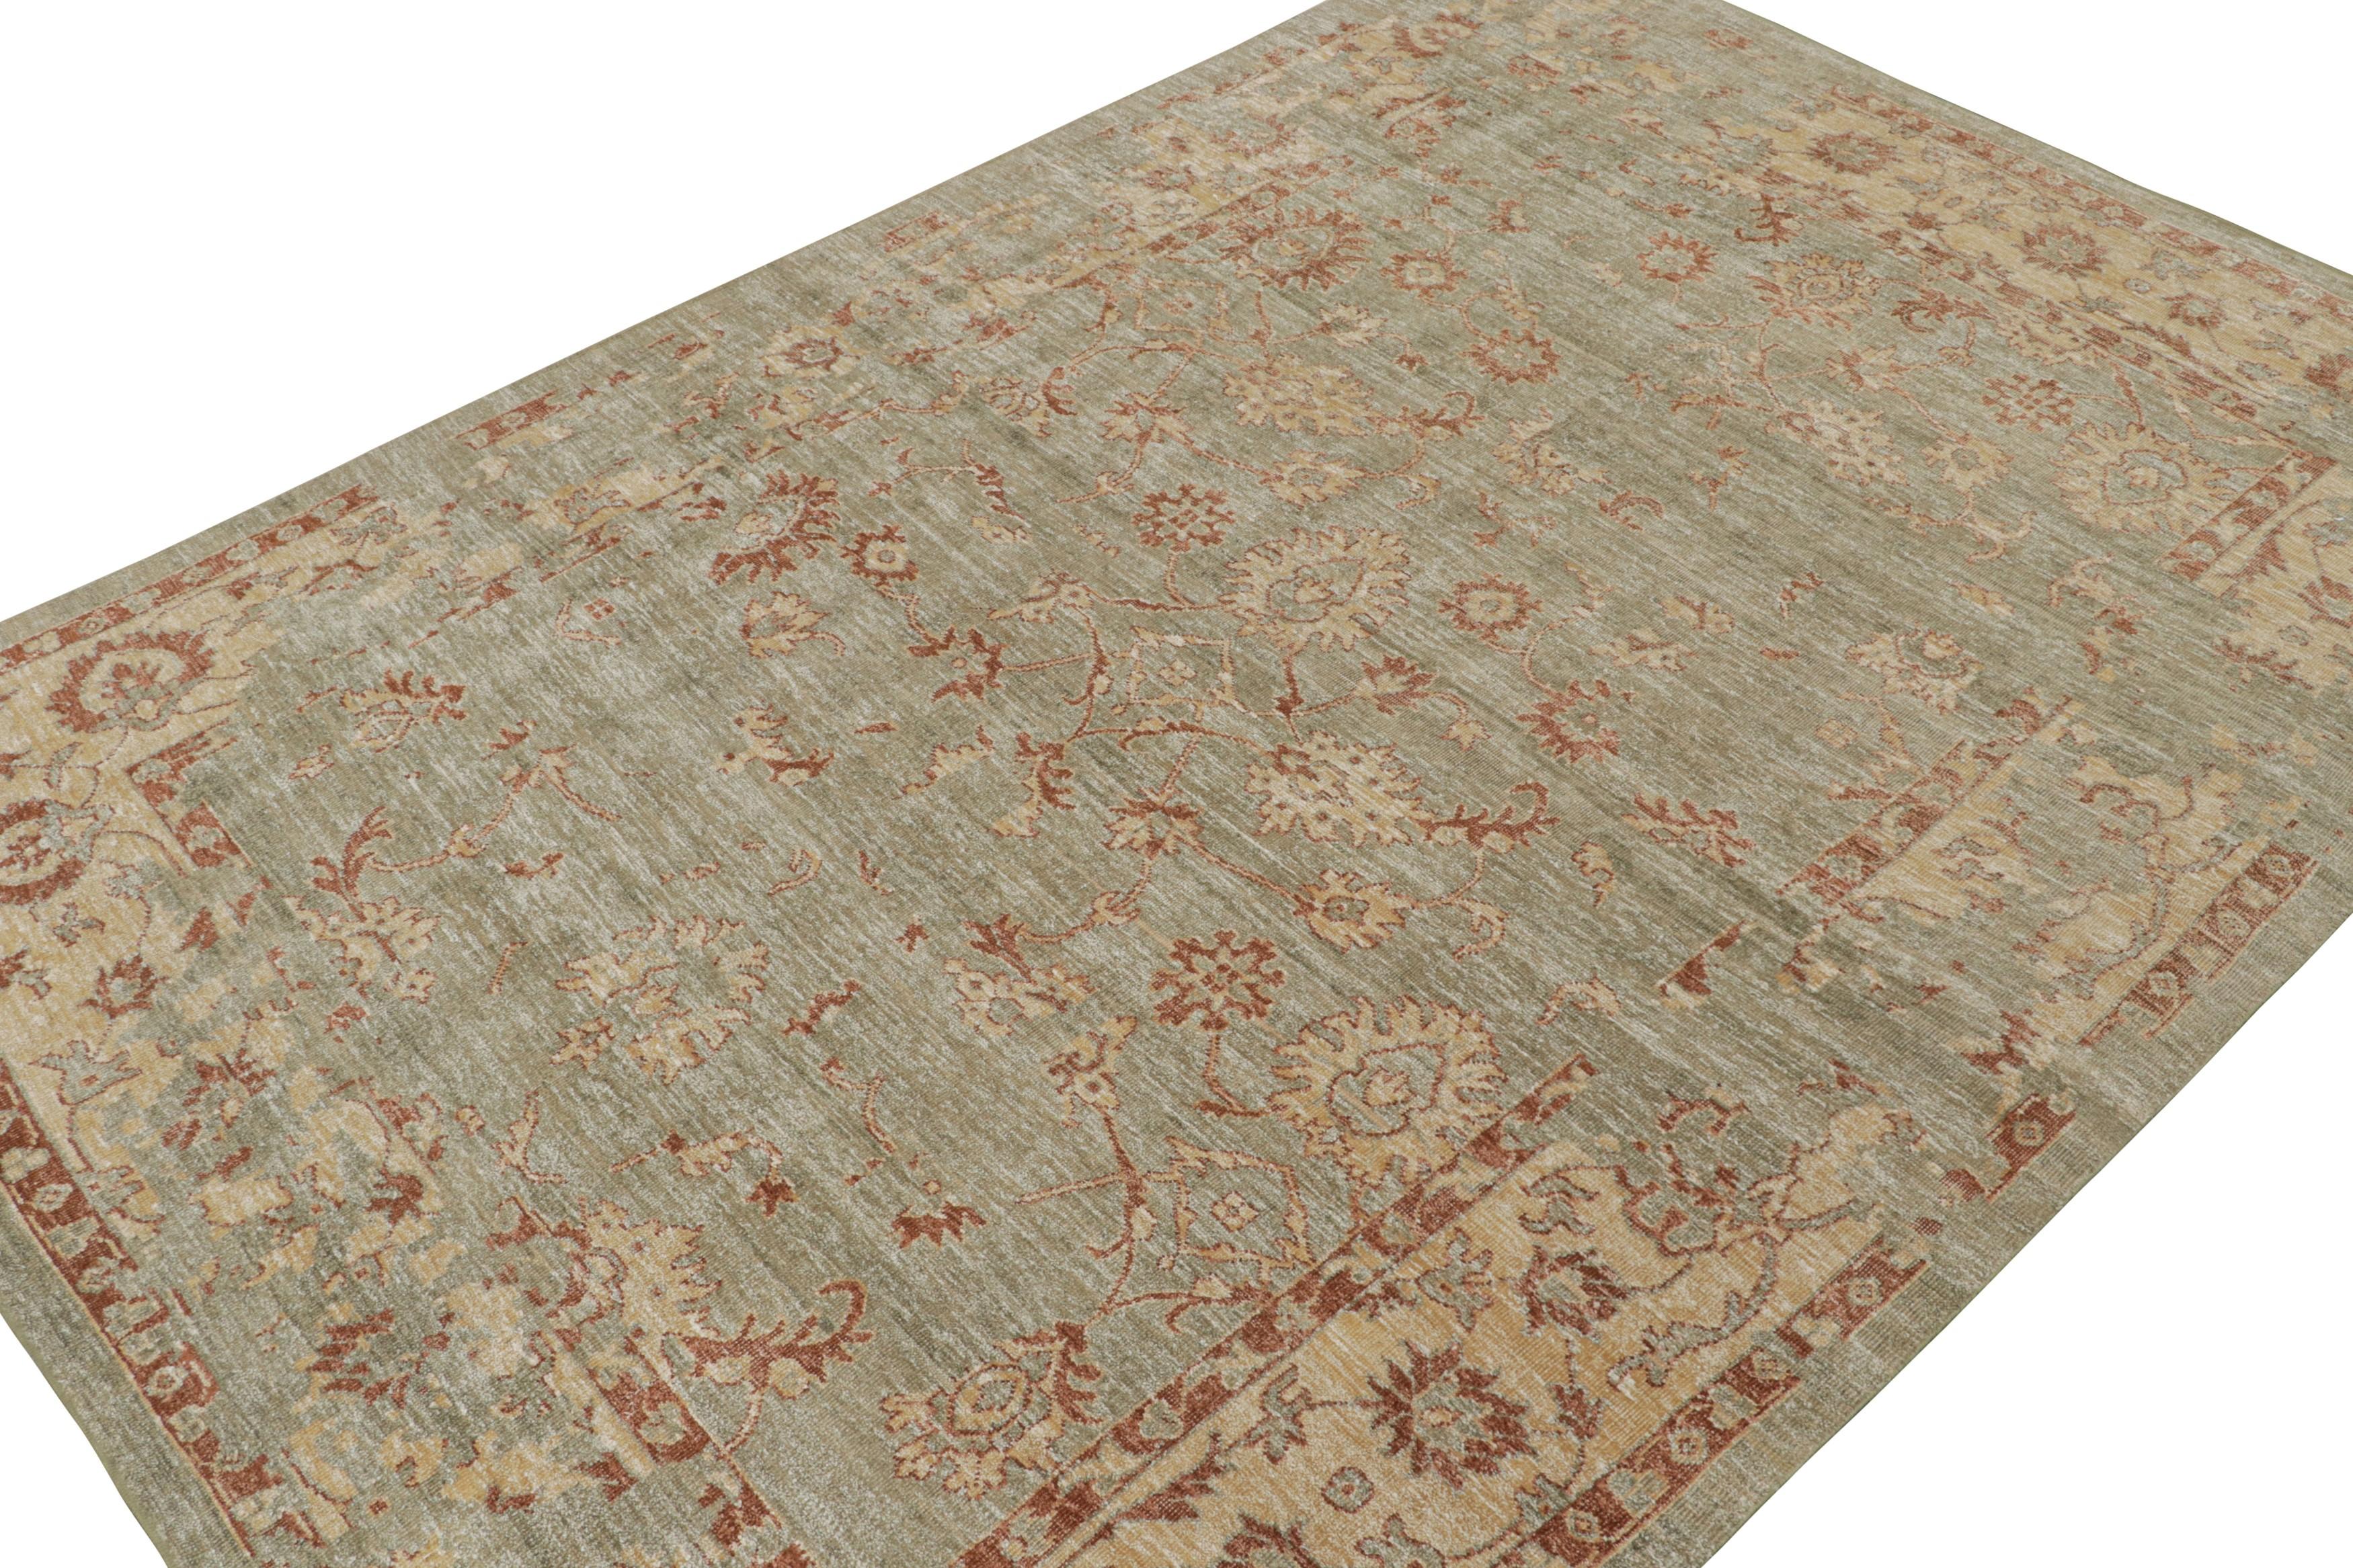 Dieser 10x14 große Teppich aus der Modern Classics Collection von Rug & Kilim stammt aus einer neuen, von antiken Oushak-Teppichen inspirierten Linie. Das aus Seide handgeknüpfte Design zeigt rost- und goldfarbene Blumenmuster auf einem beigen Feld